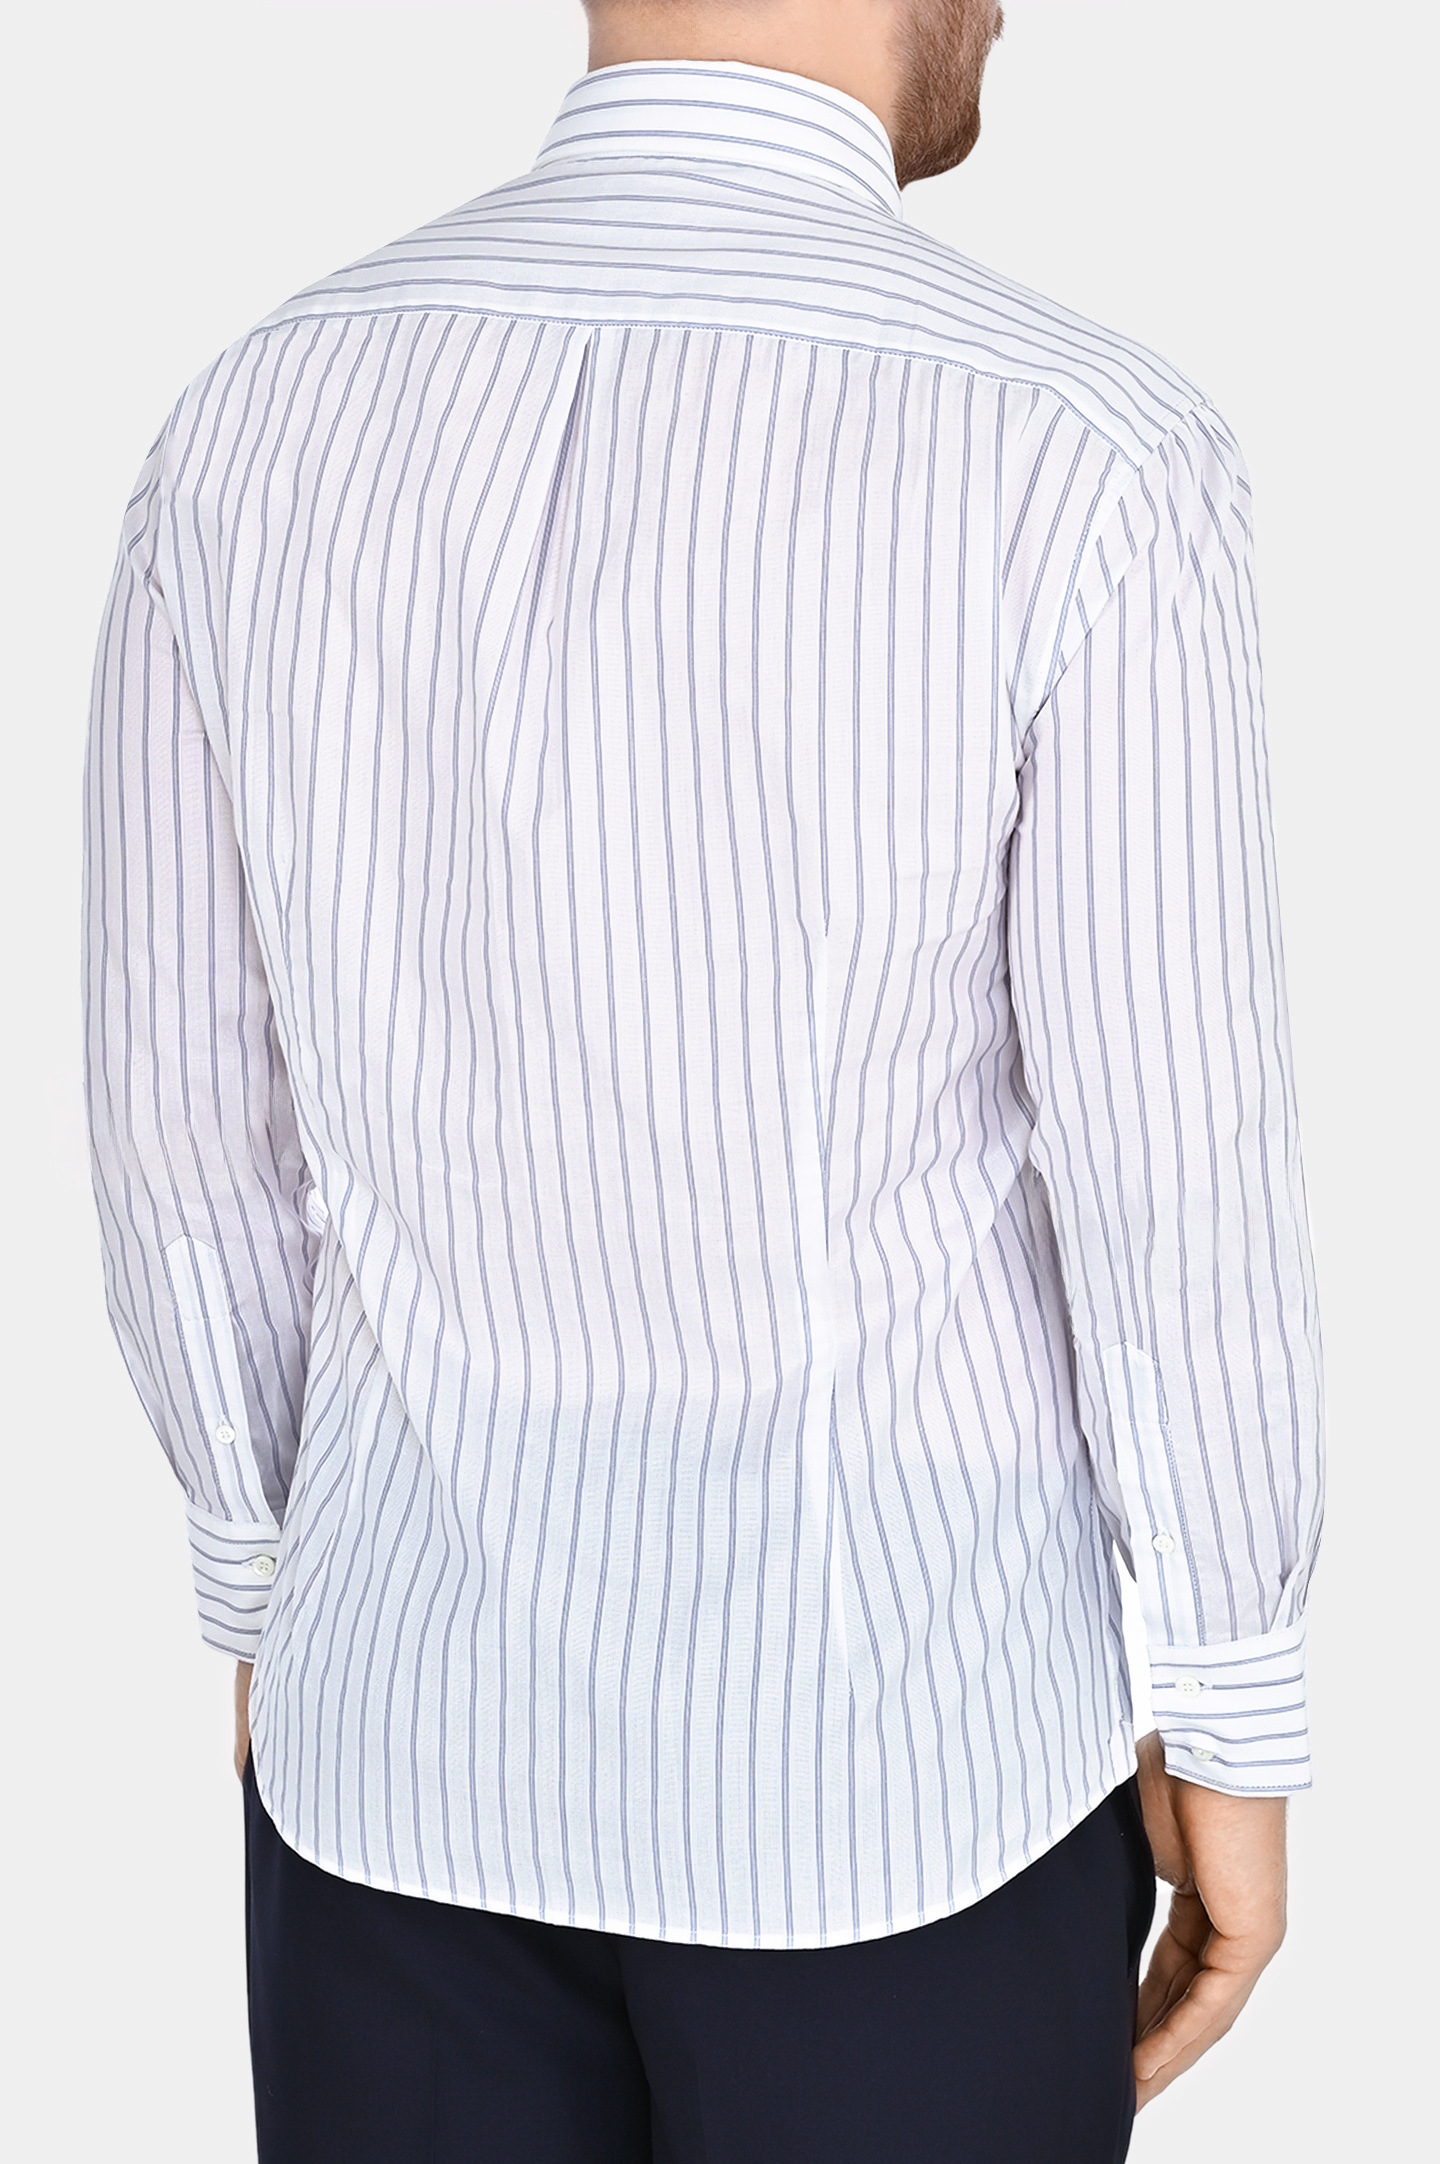 Хлопковая рубашка в полоску BRUNELLO  CUCINELLI MM6361716, цвет: Голубой, Мужской